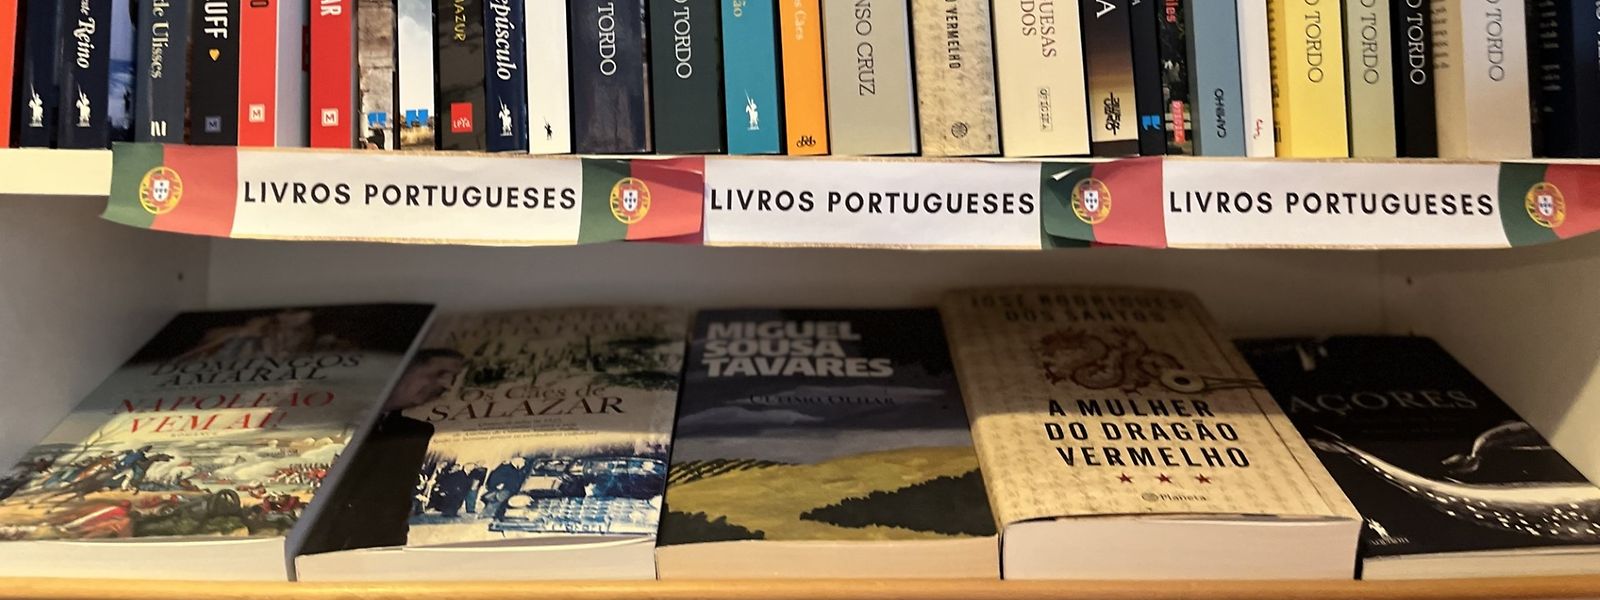 Estante com livros em português na Libreria Italiana, no bairro do Grund, na capital.